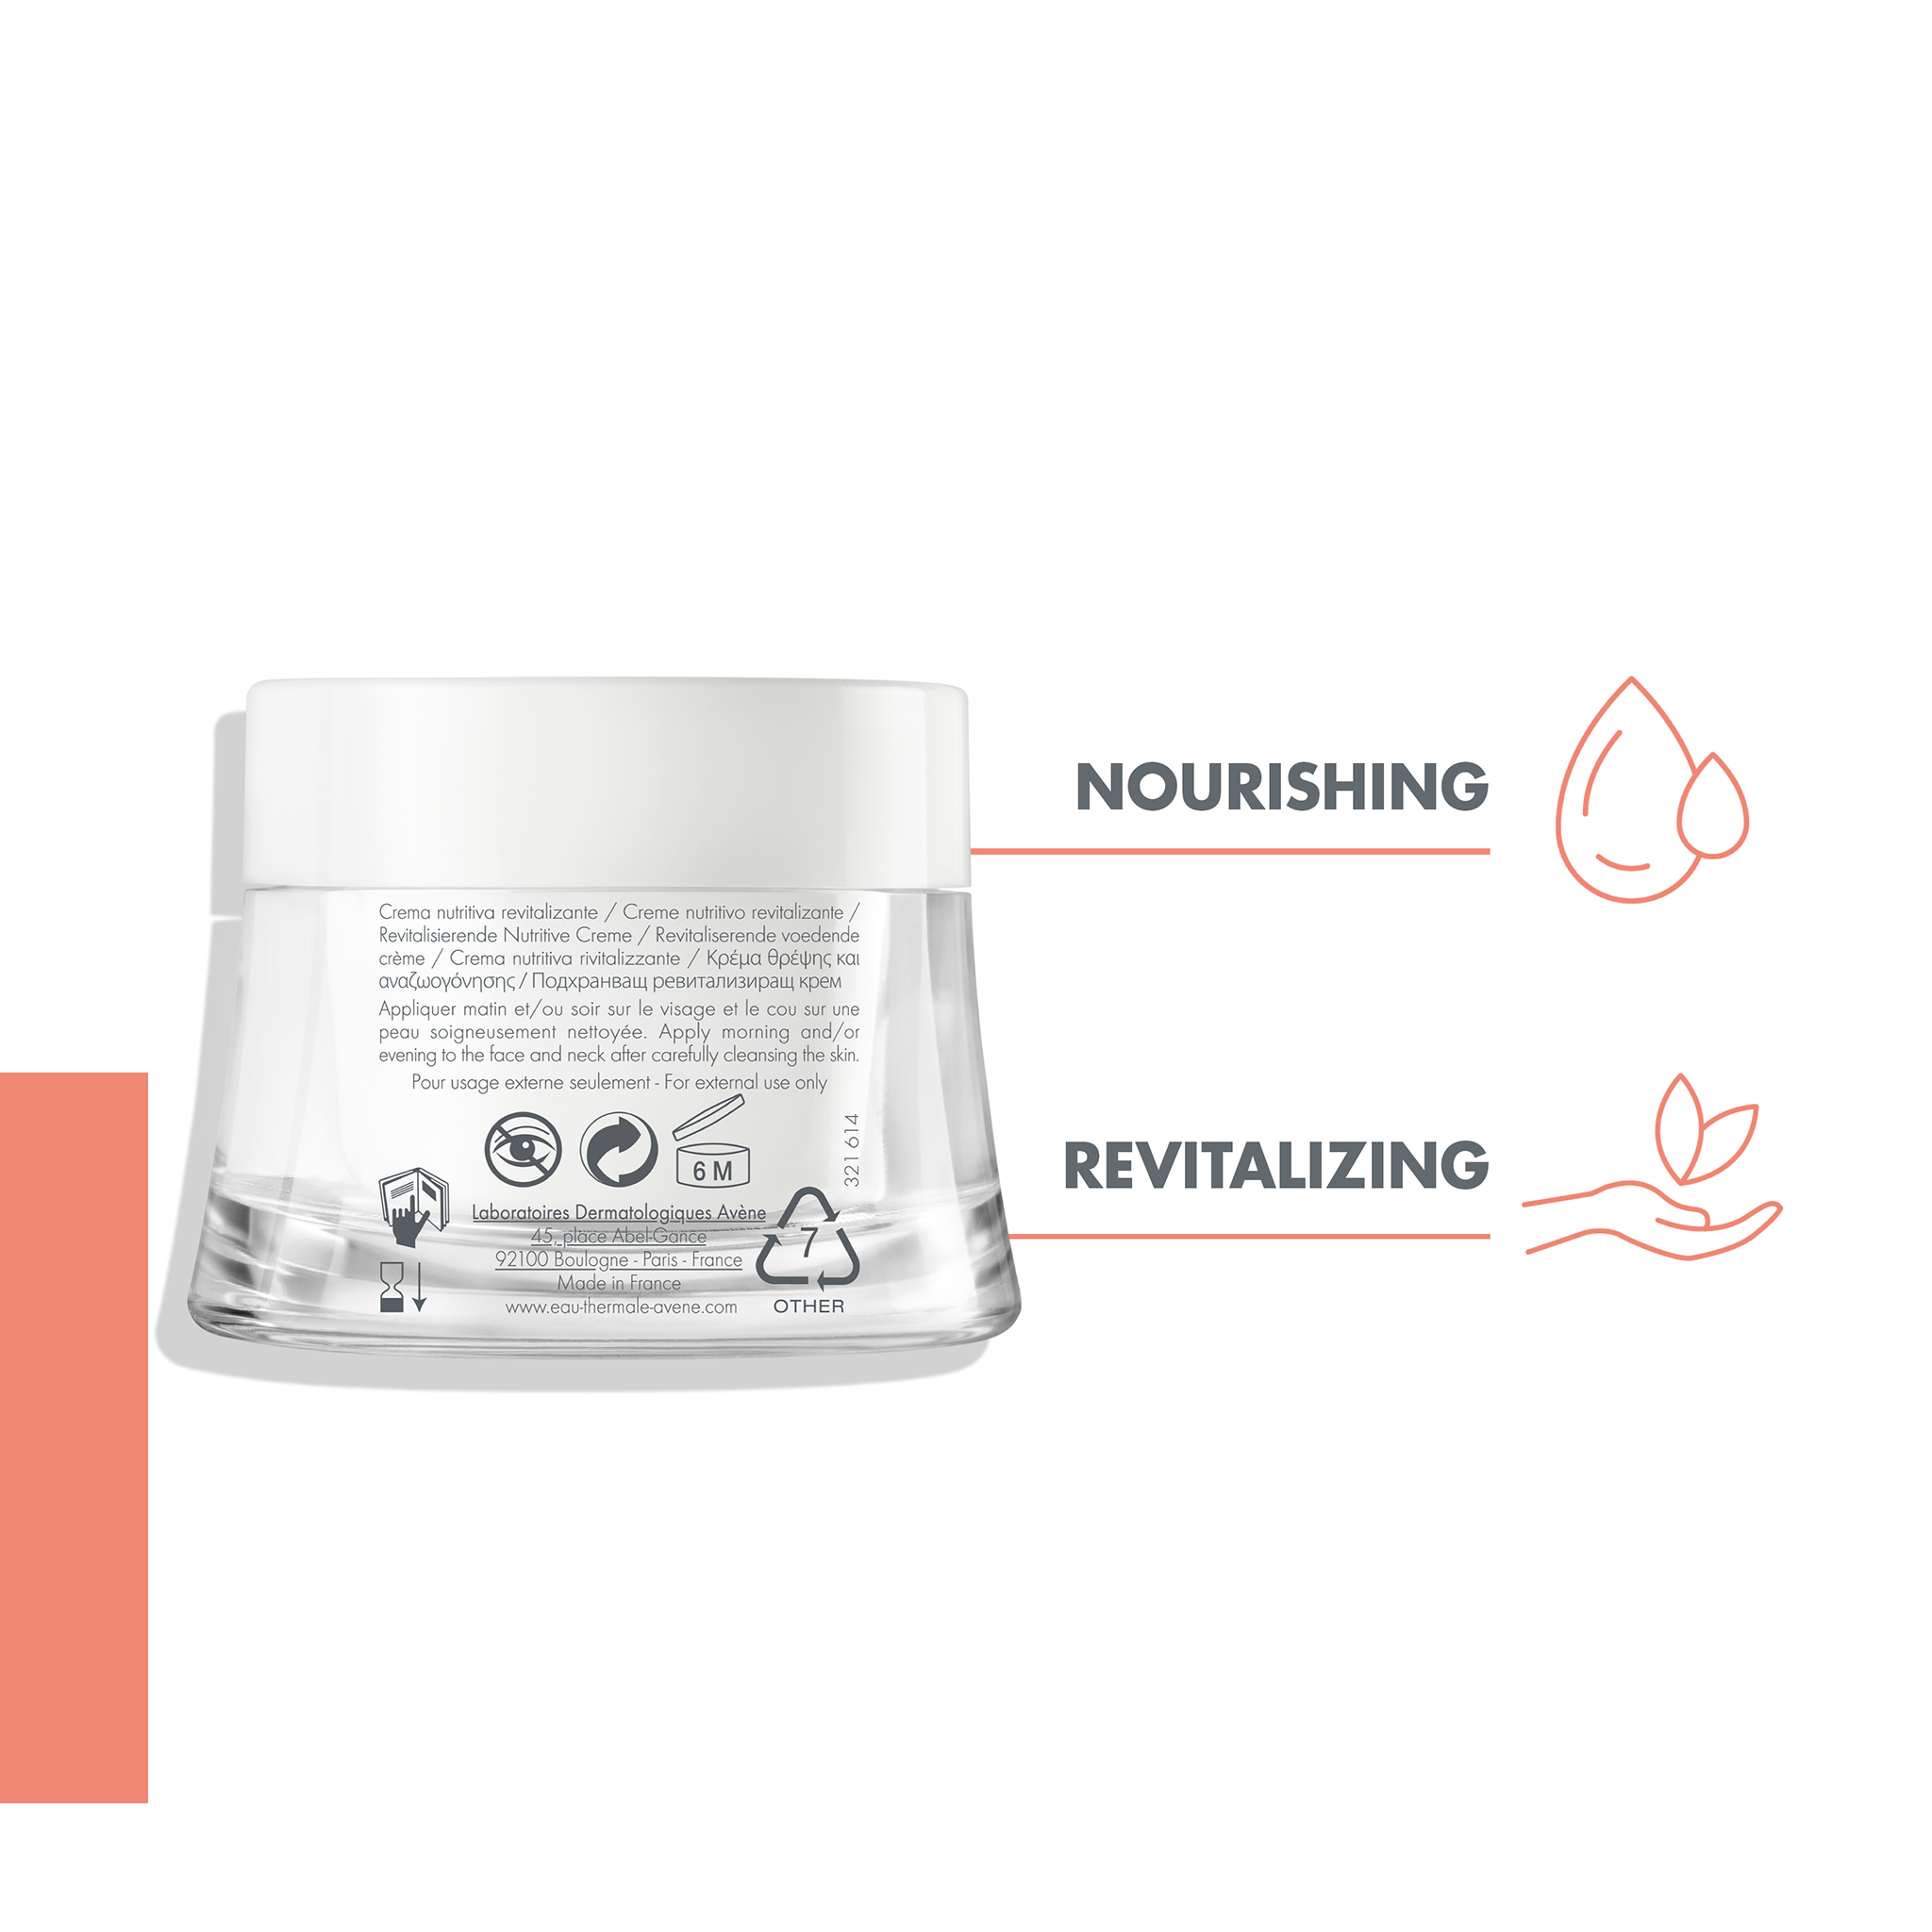 Avène Revitalising Nourishing Cream 50ml - Moisturiser for Dry Sensitive Skin